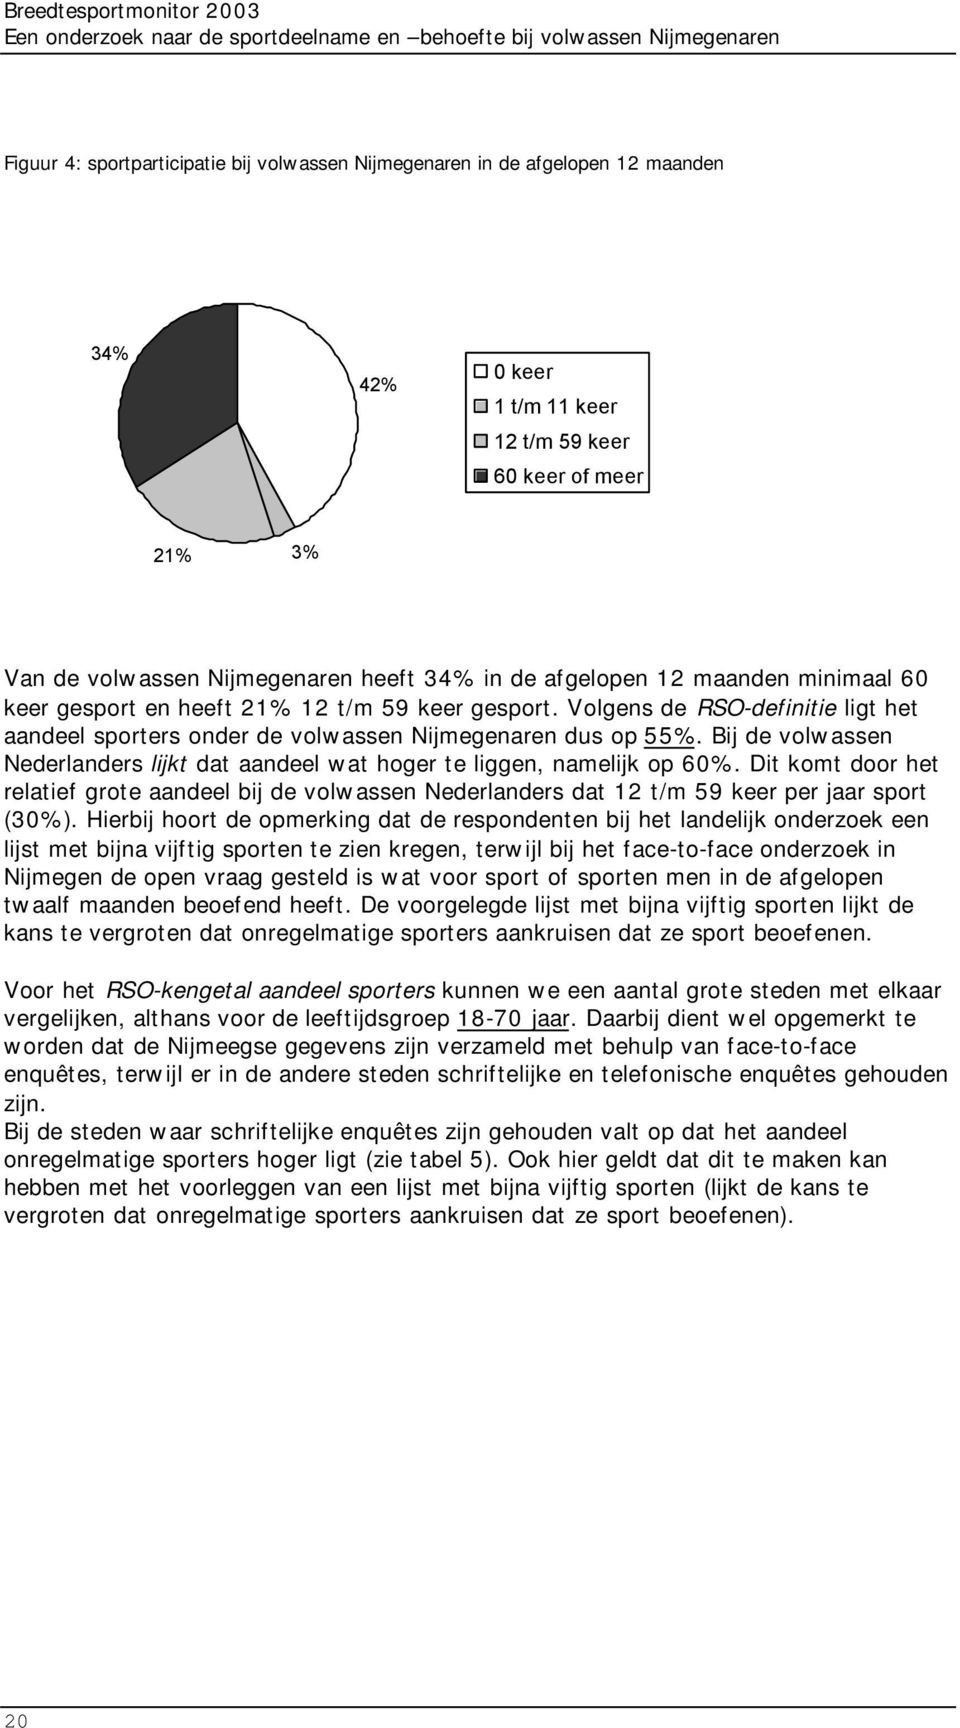 Volgens de RSO-definitie ligt het aandeel sporters onder de volwassen Nijmegenaren dus op 55%. Bij de volwassen Nederlanders lijkt dat aandeel wat hoger te liggen, namelijk op 60%.